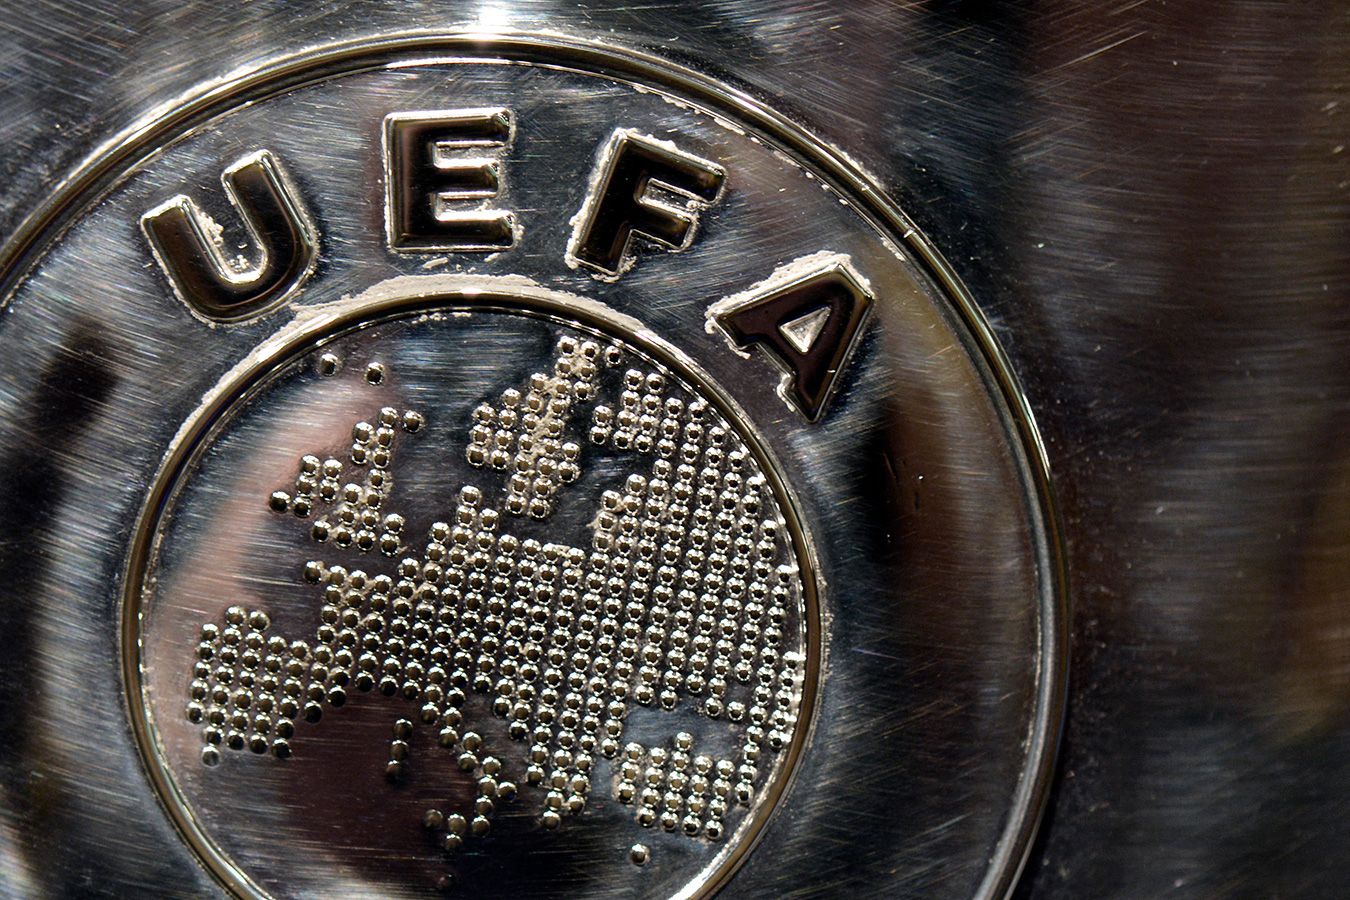 УЕФА разрабатывает план по внедрению потолка затрат на трансферы